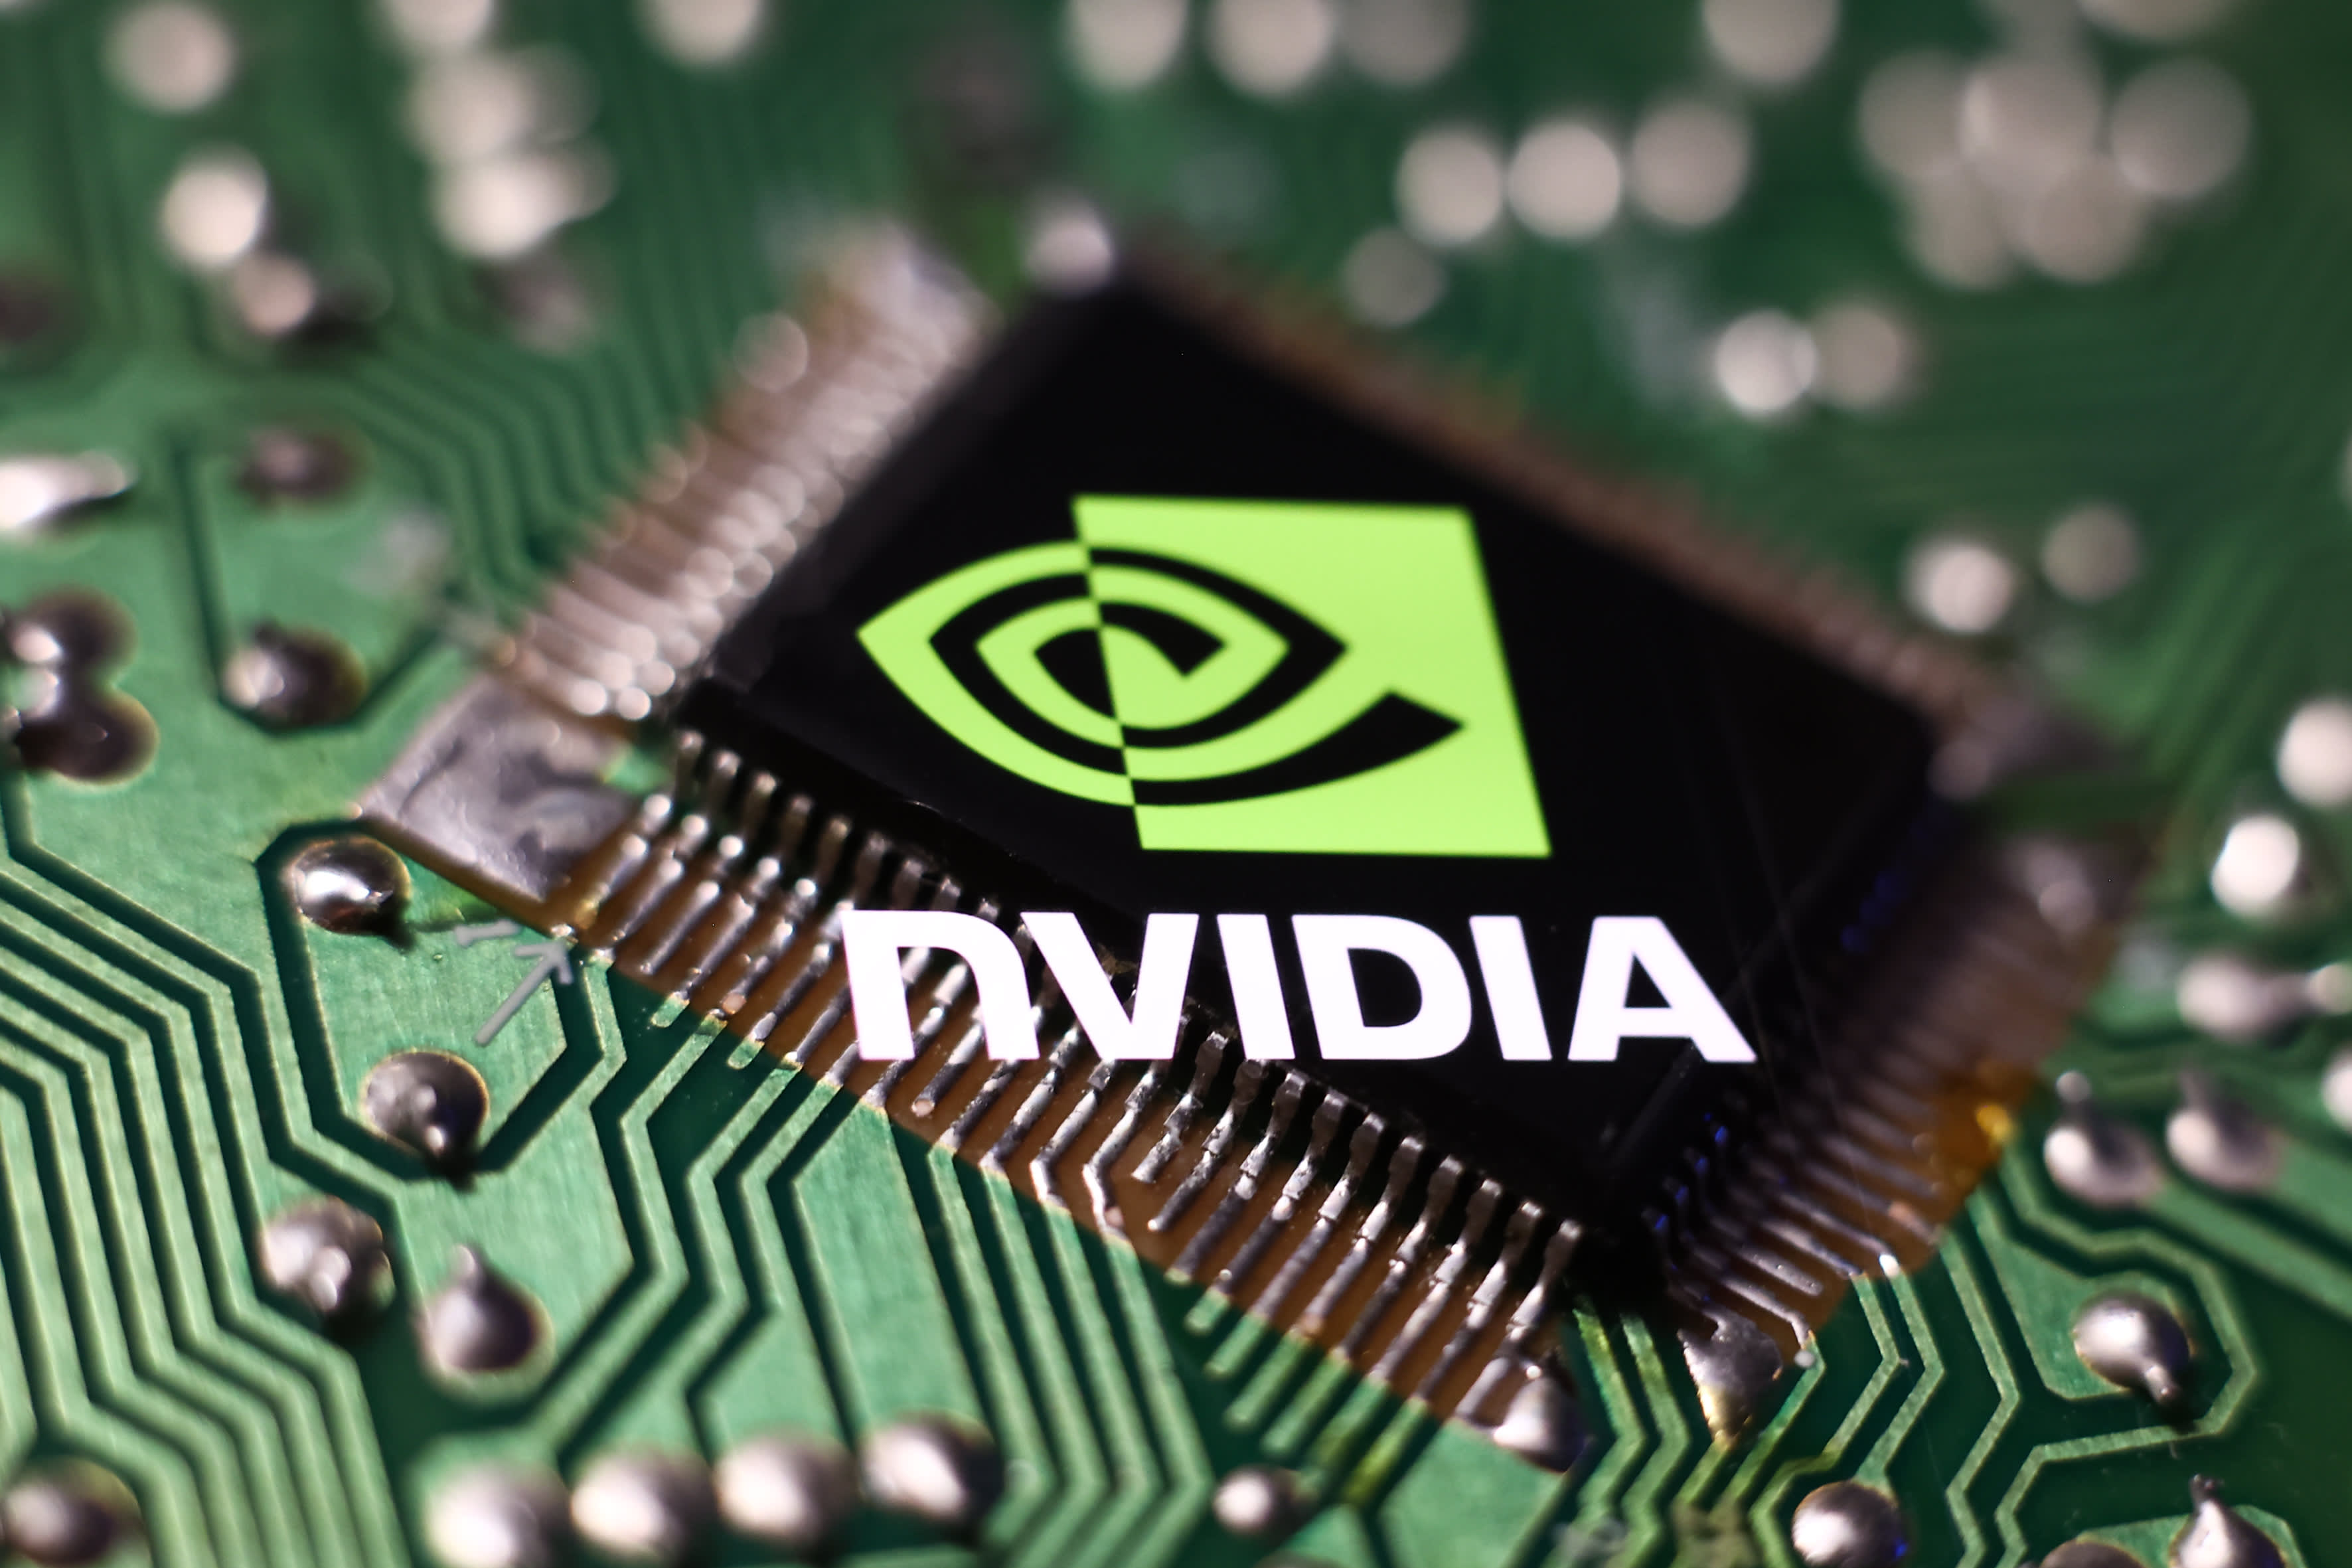 Nvidiaの利益を上回った後、人工知能と半導体の株が上昇した